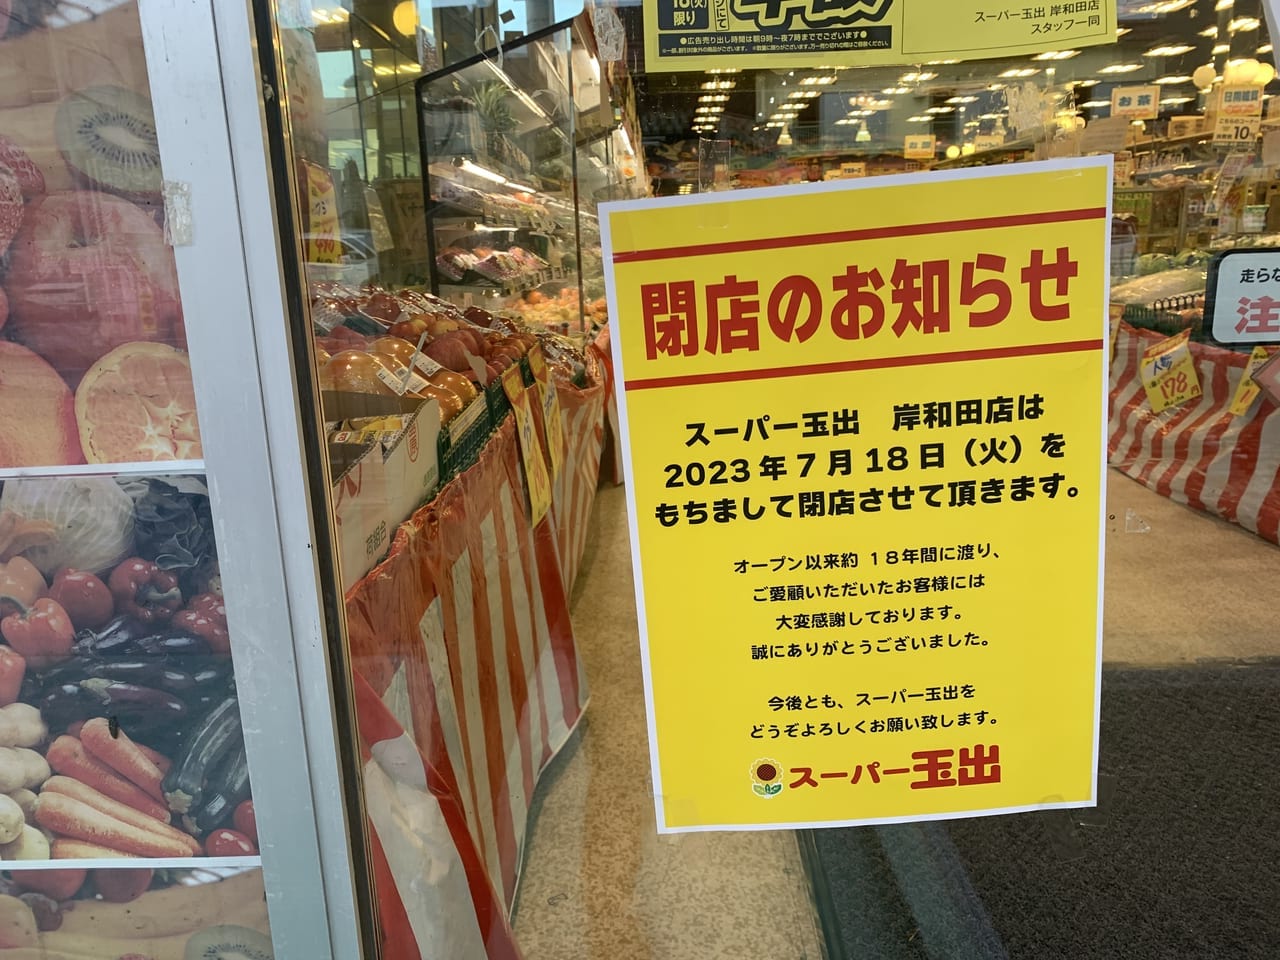 スーパー玉出岸和田店